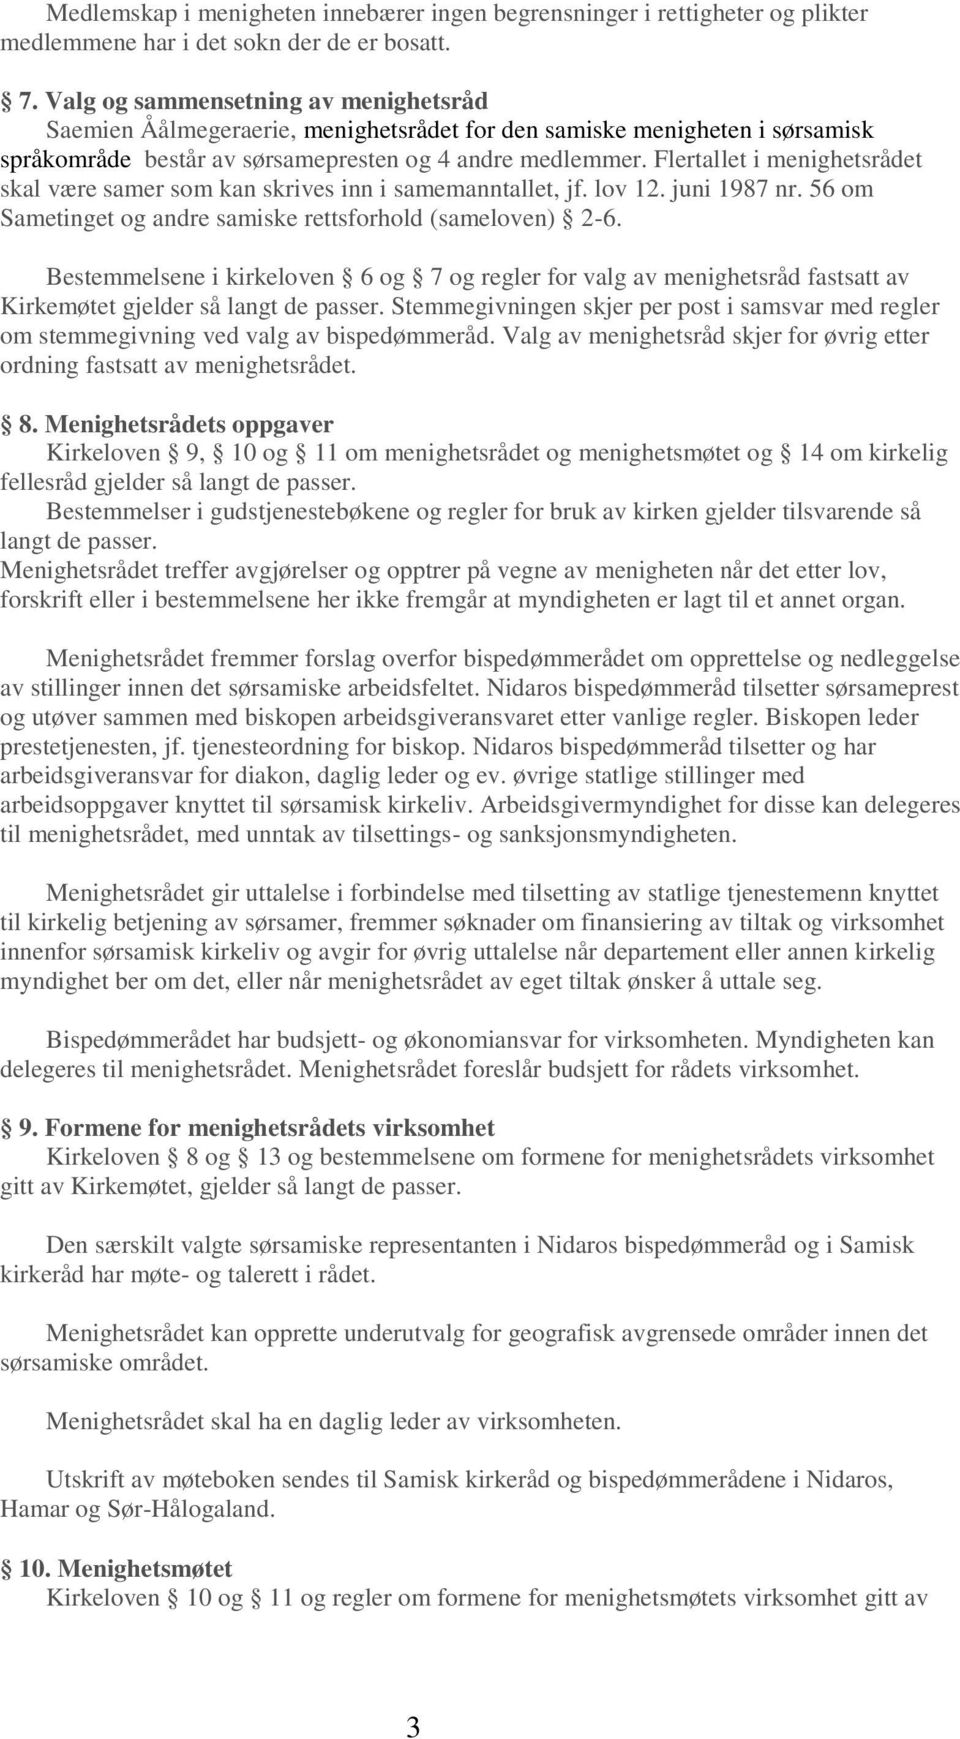 Flertallet i menighetsrådet skal være samer som kan skrives inn i samemanntallet, jf. lov 12. juni 1987 nr. 56 om Sametinget og andre samiske rettsforhold (sameloven) 2-6.